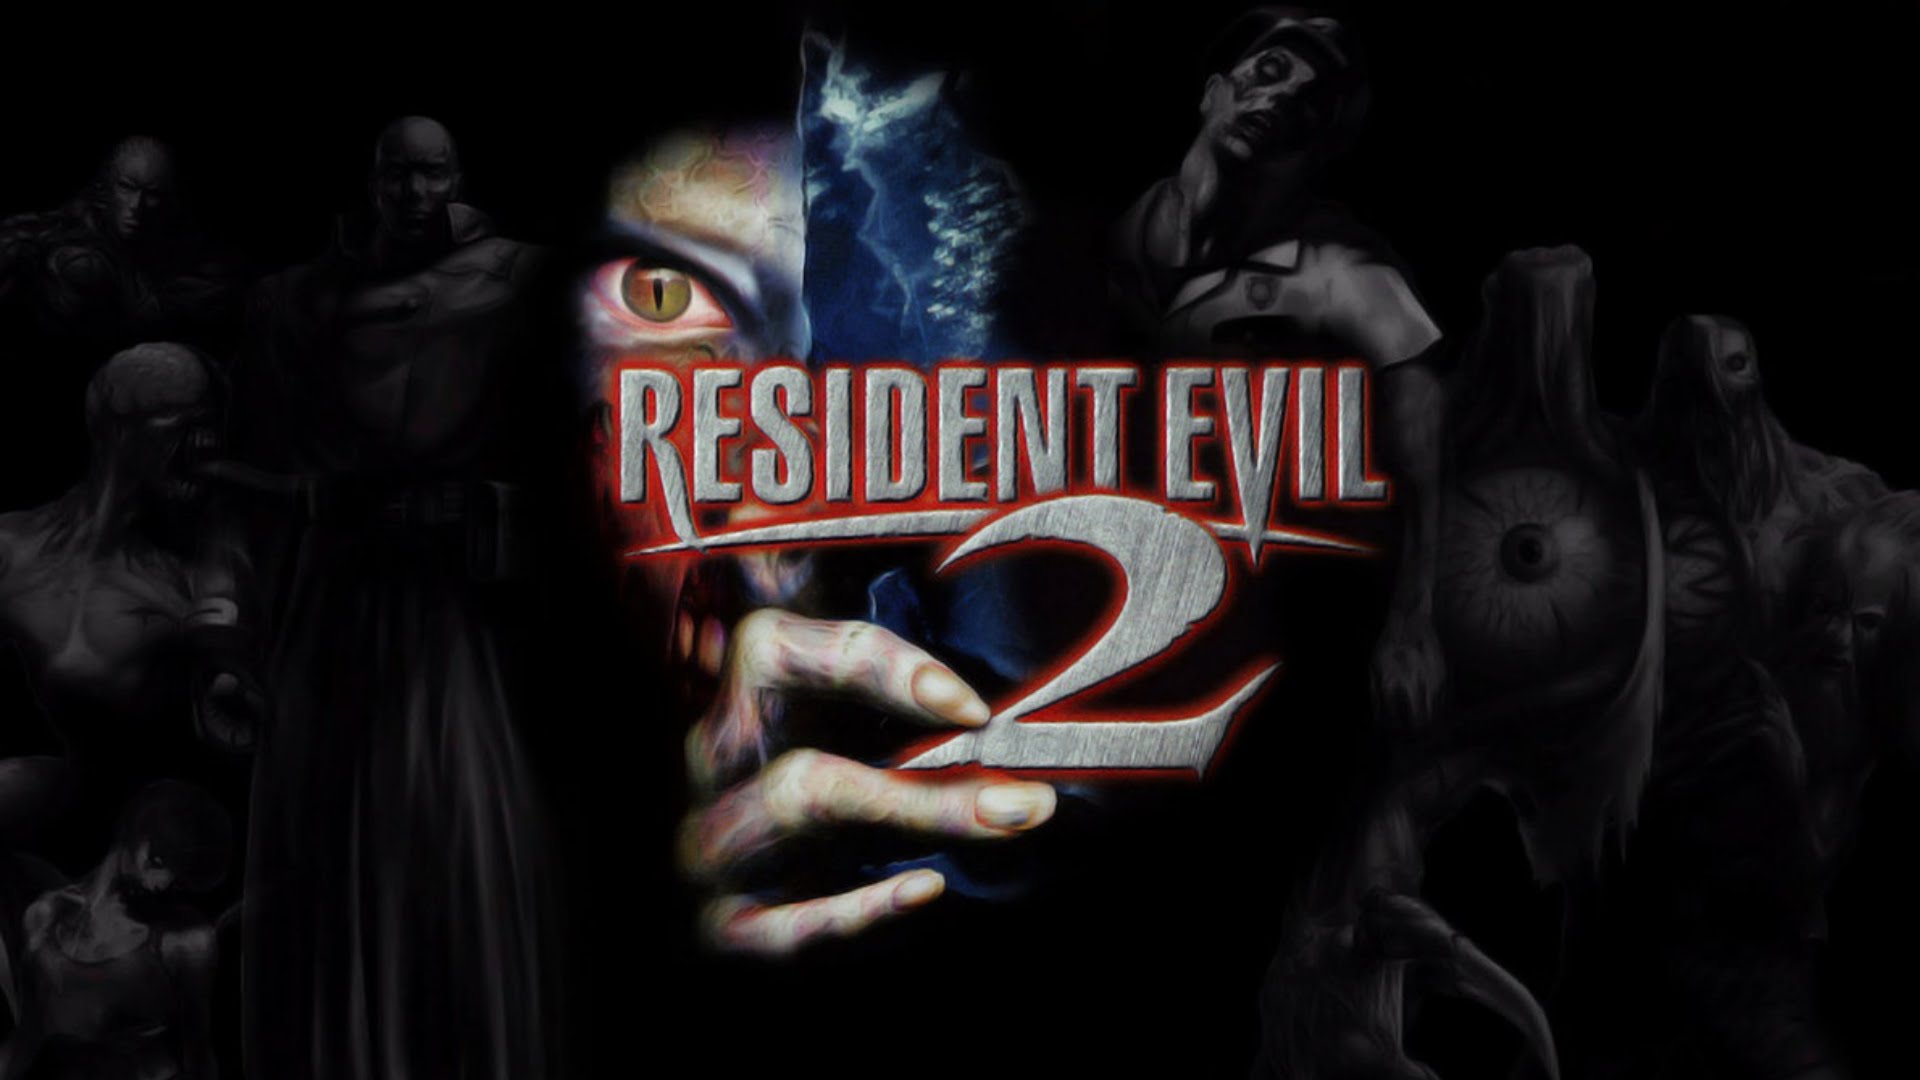 Melhores papéis de parede de Resident Evil 2 para tela do telefone